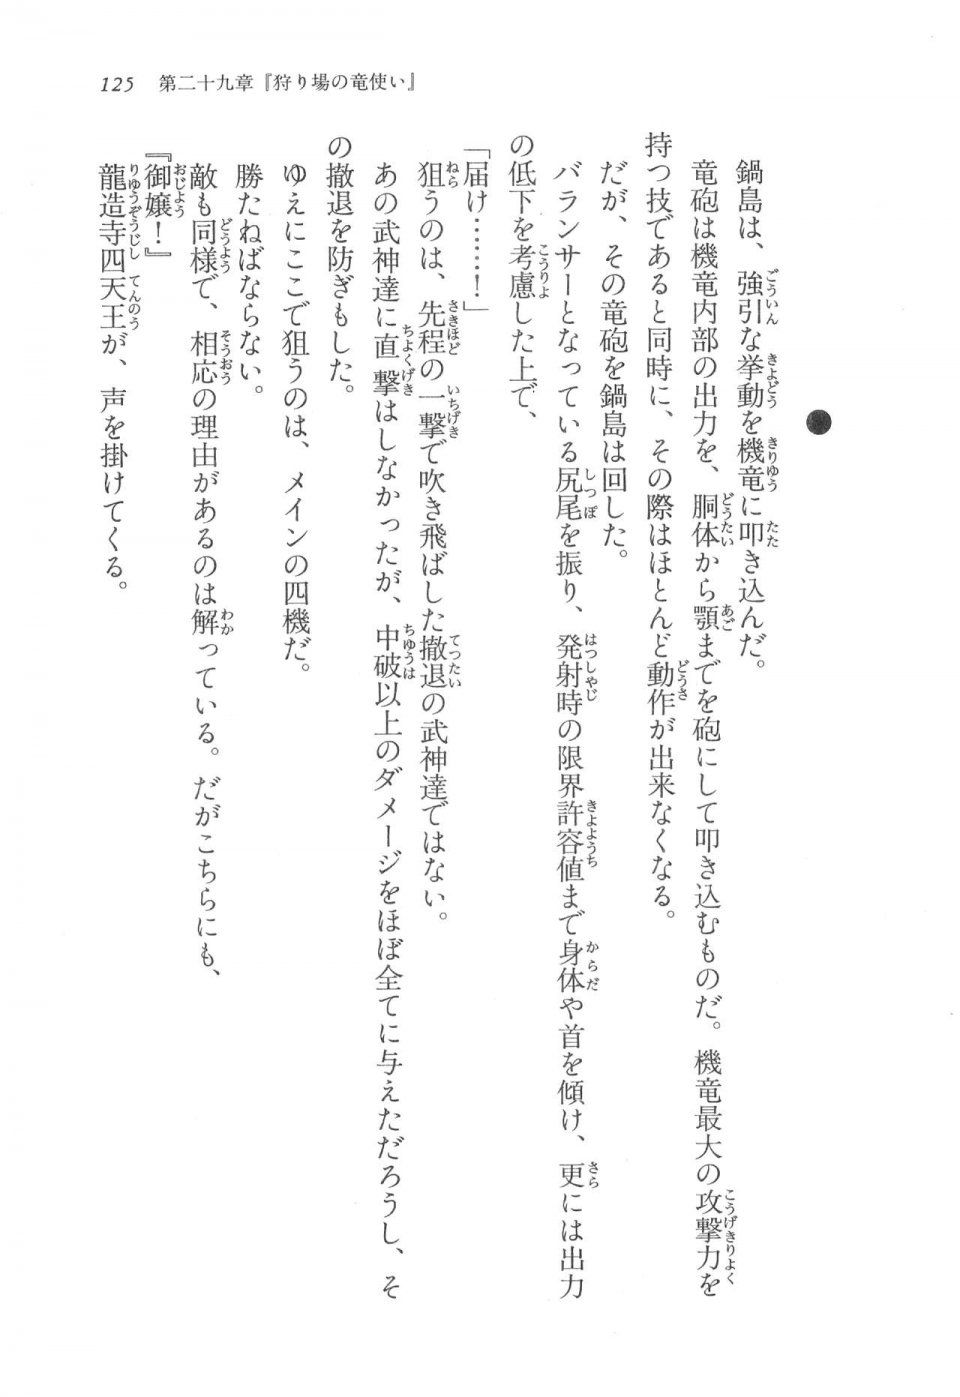 Kyoukai Senjou no Horizon LN Vol 17(7B) - Photo #125